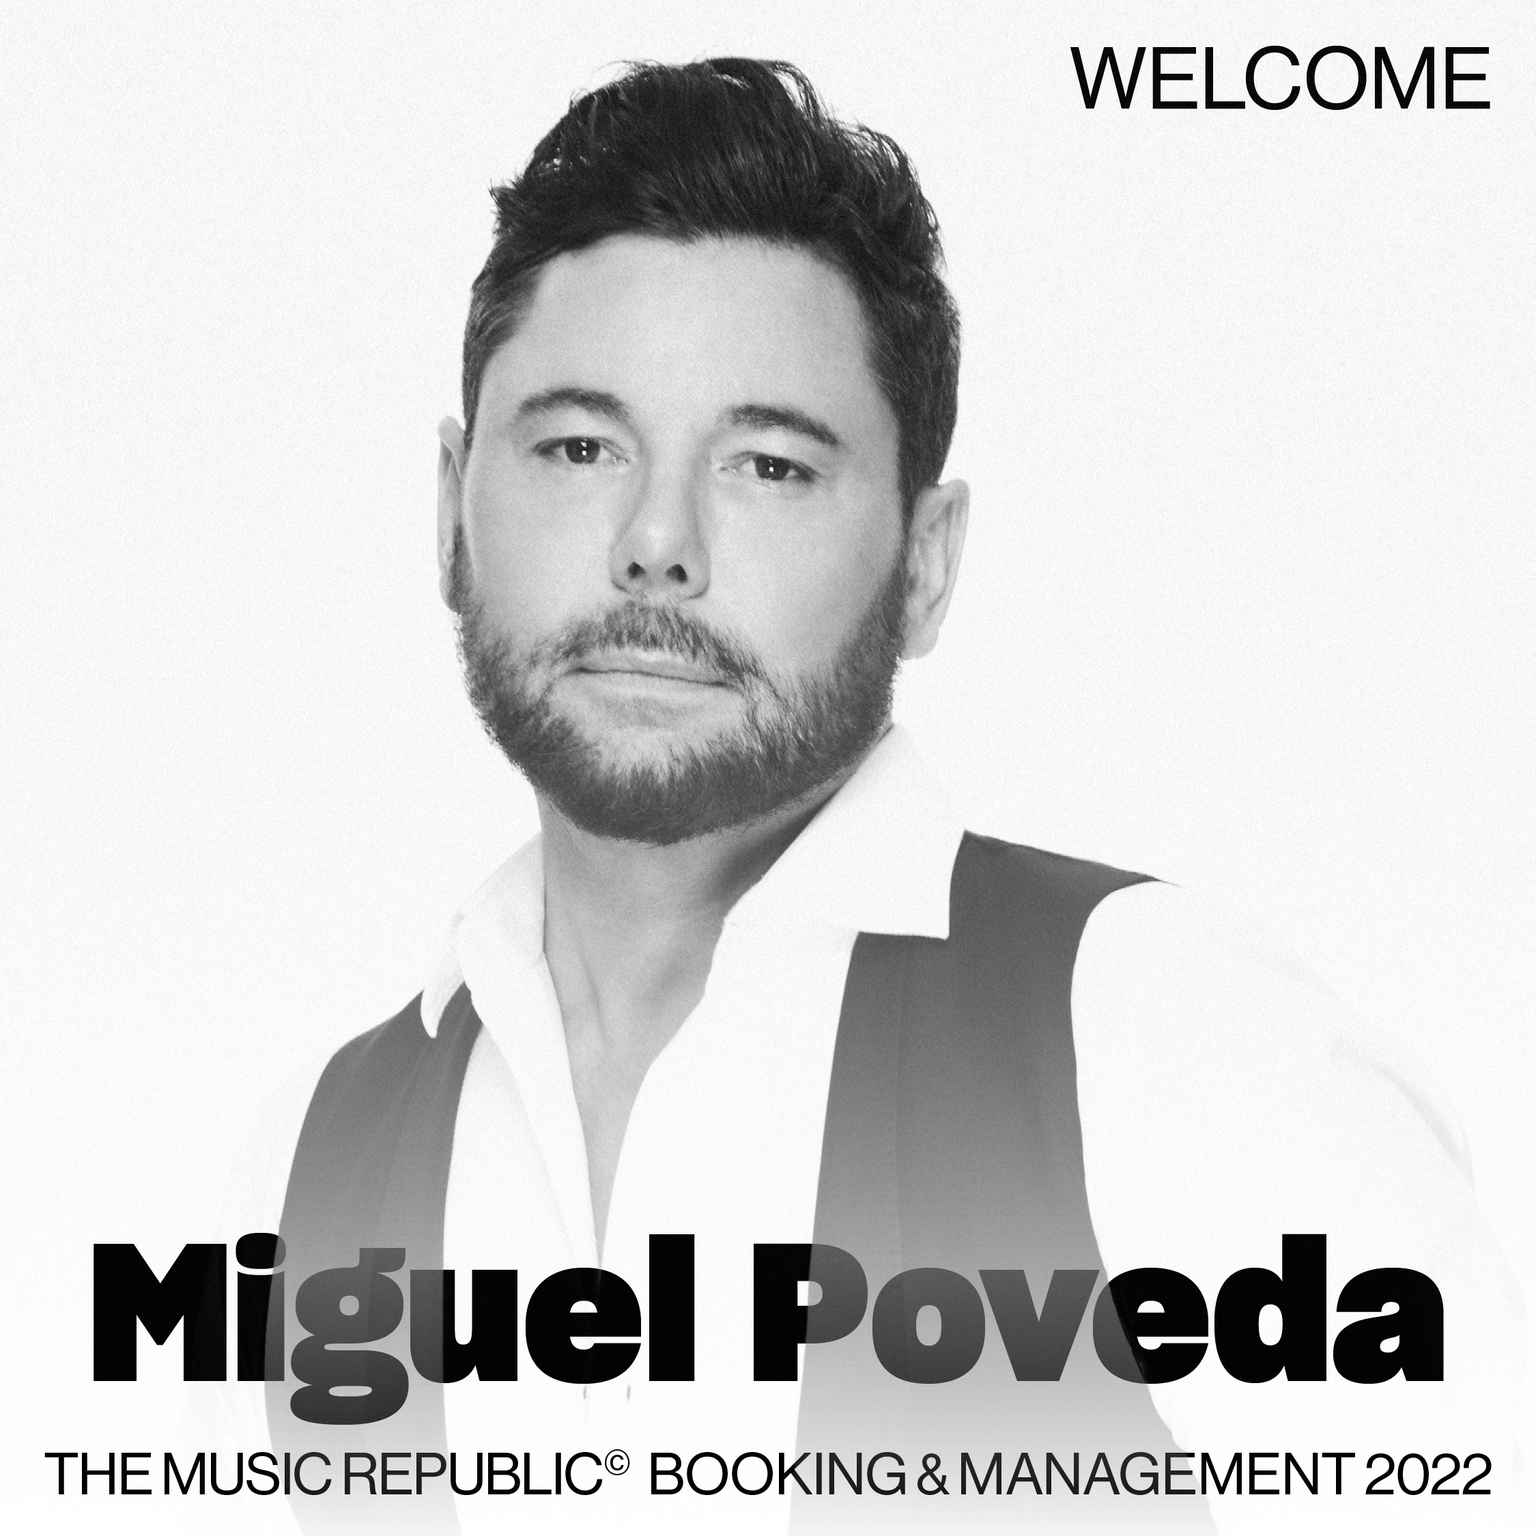 THE MUSIC REPUBLIC NUEVA AGENCIA DE BOOKING & MANAGEMENT DE MIGUEL POVEDA